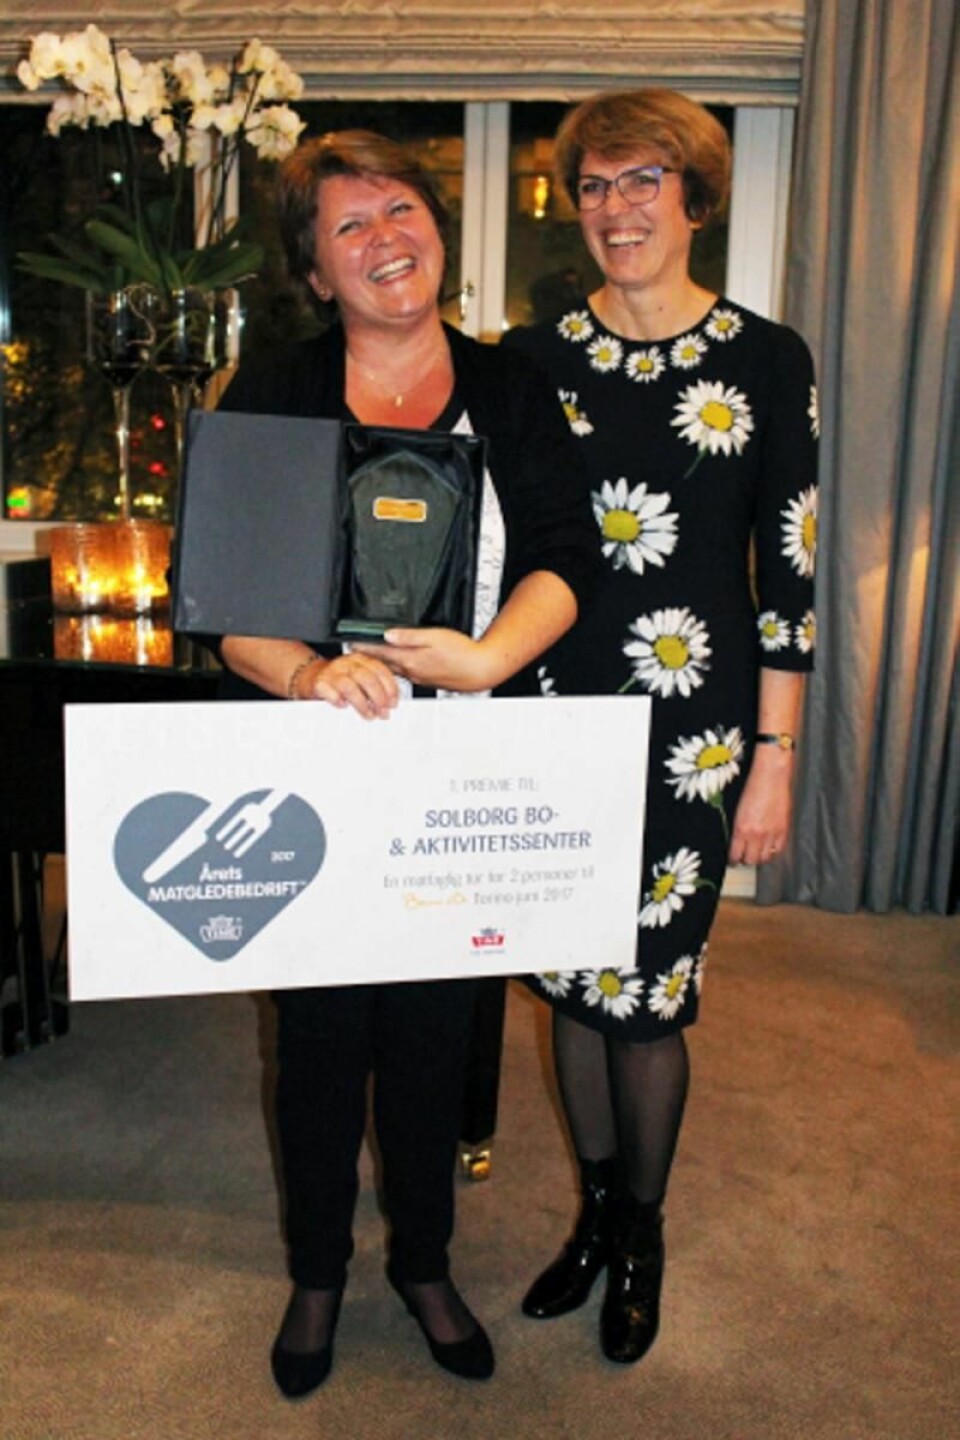 Stolt og glad vinner, Hege Nygaard fra Solborg Bo- og aktivitetssenyer, sammen med Tines konsernsjef Hanne Refsholt. (Foto: Brita Unnerud)